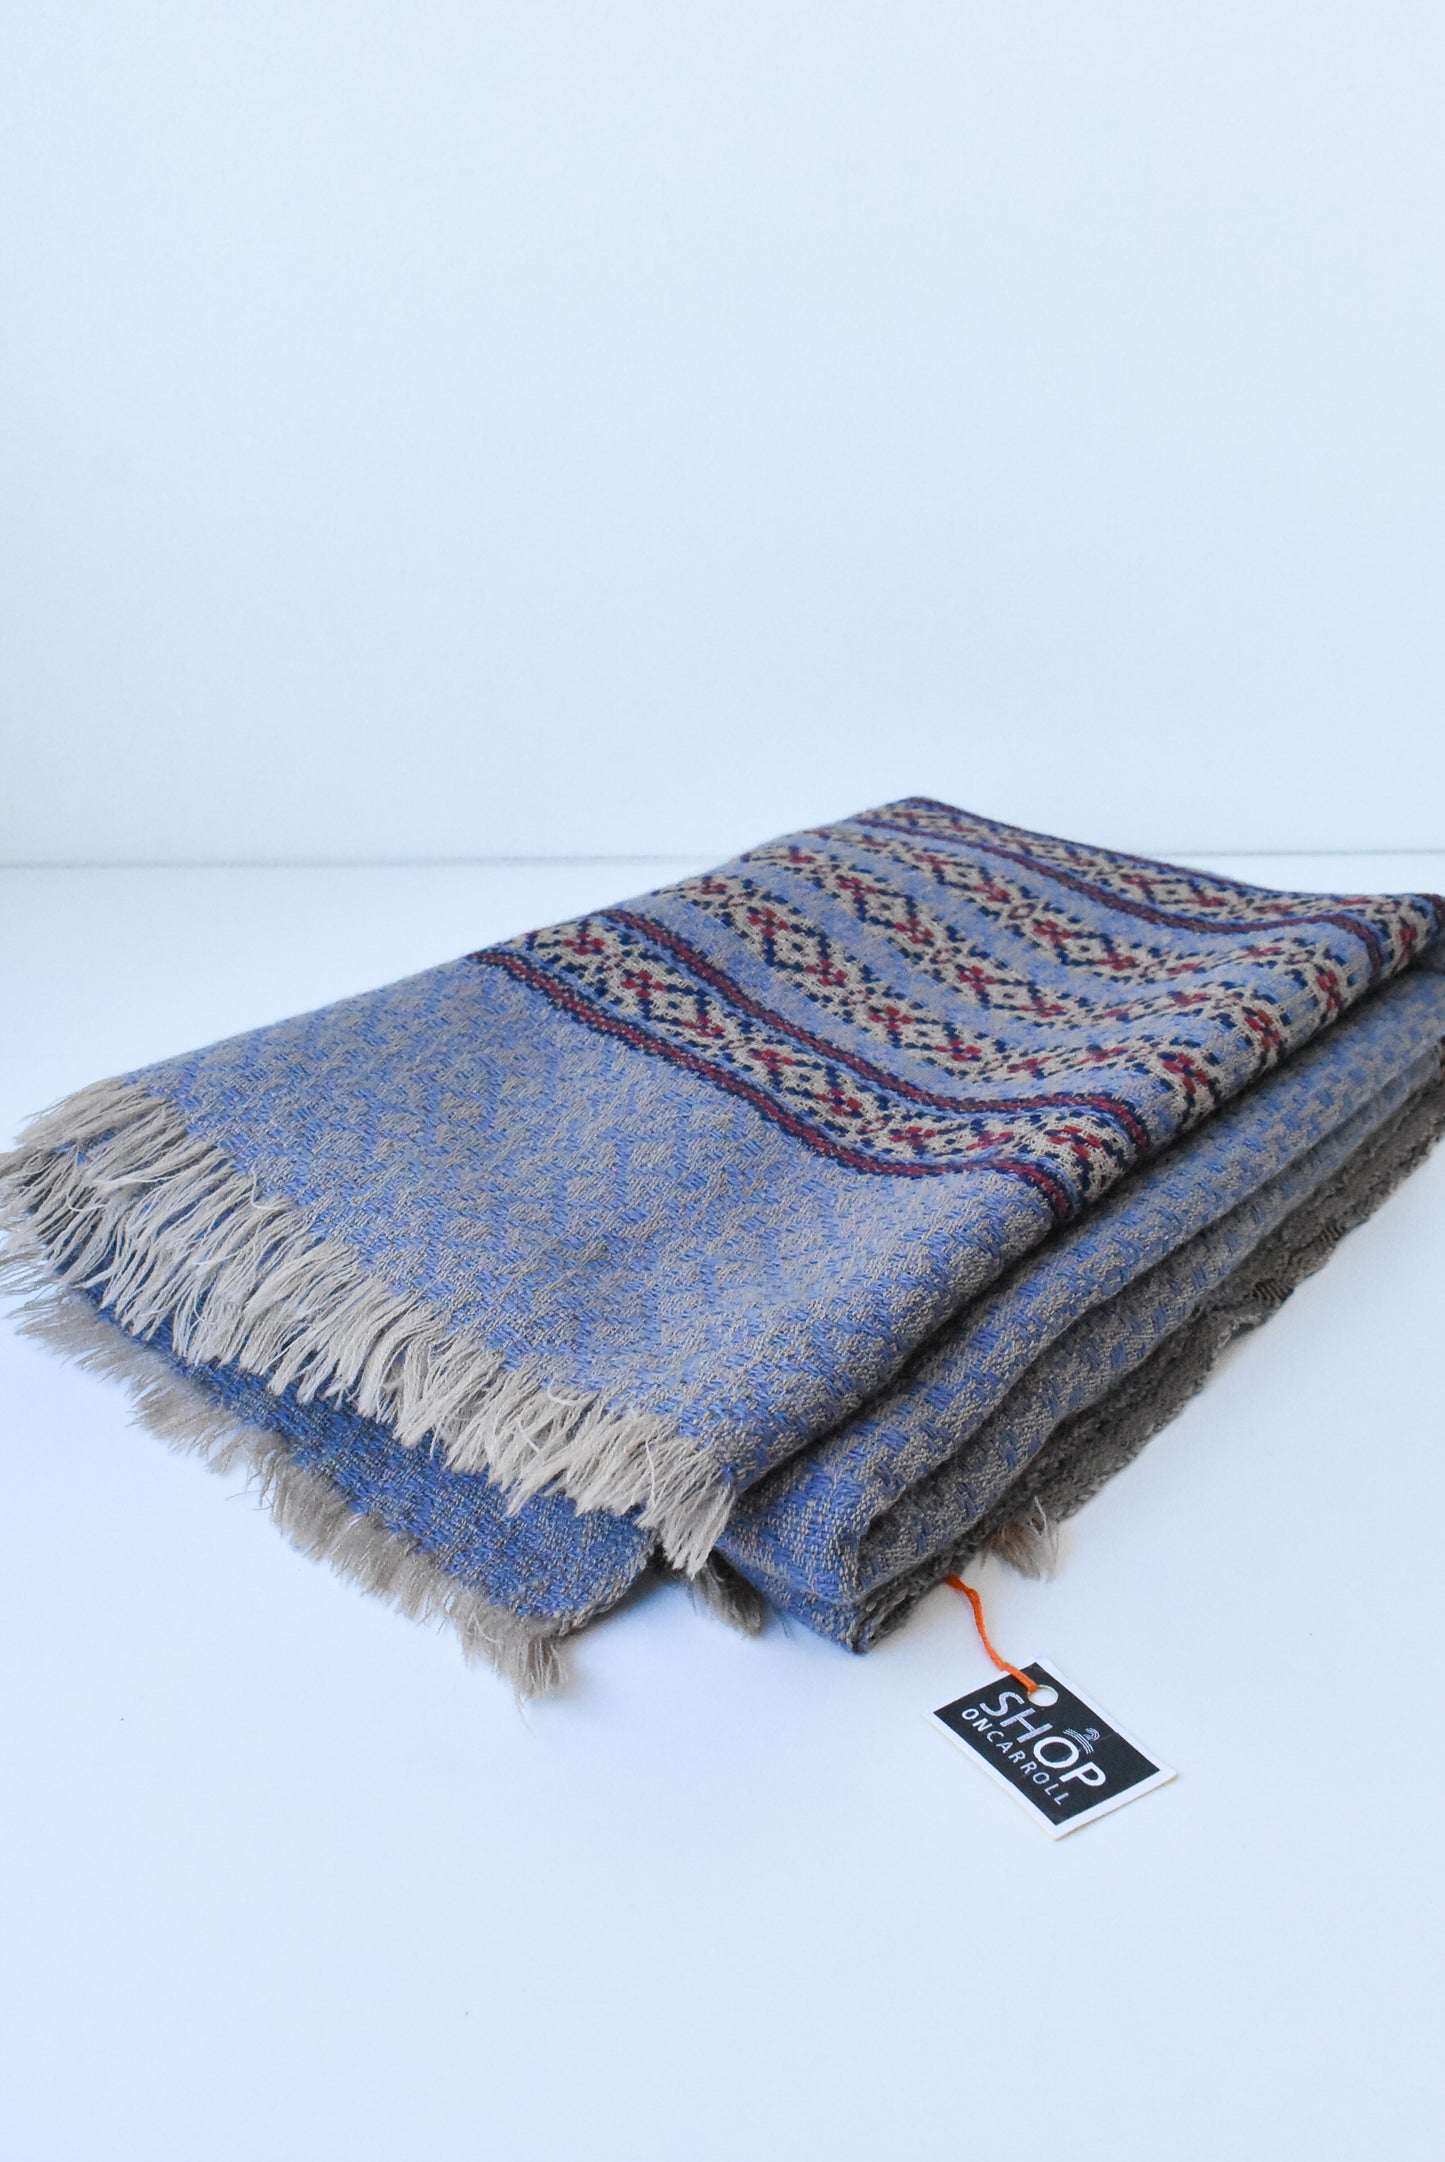 Hand-loomed wool blanket